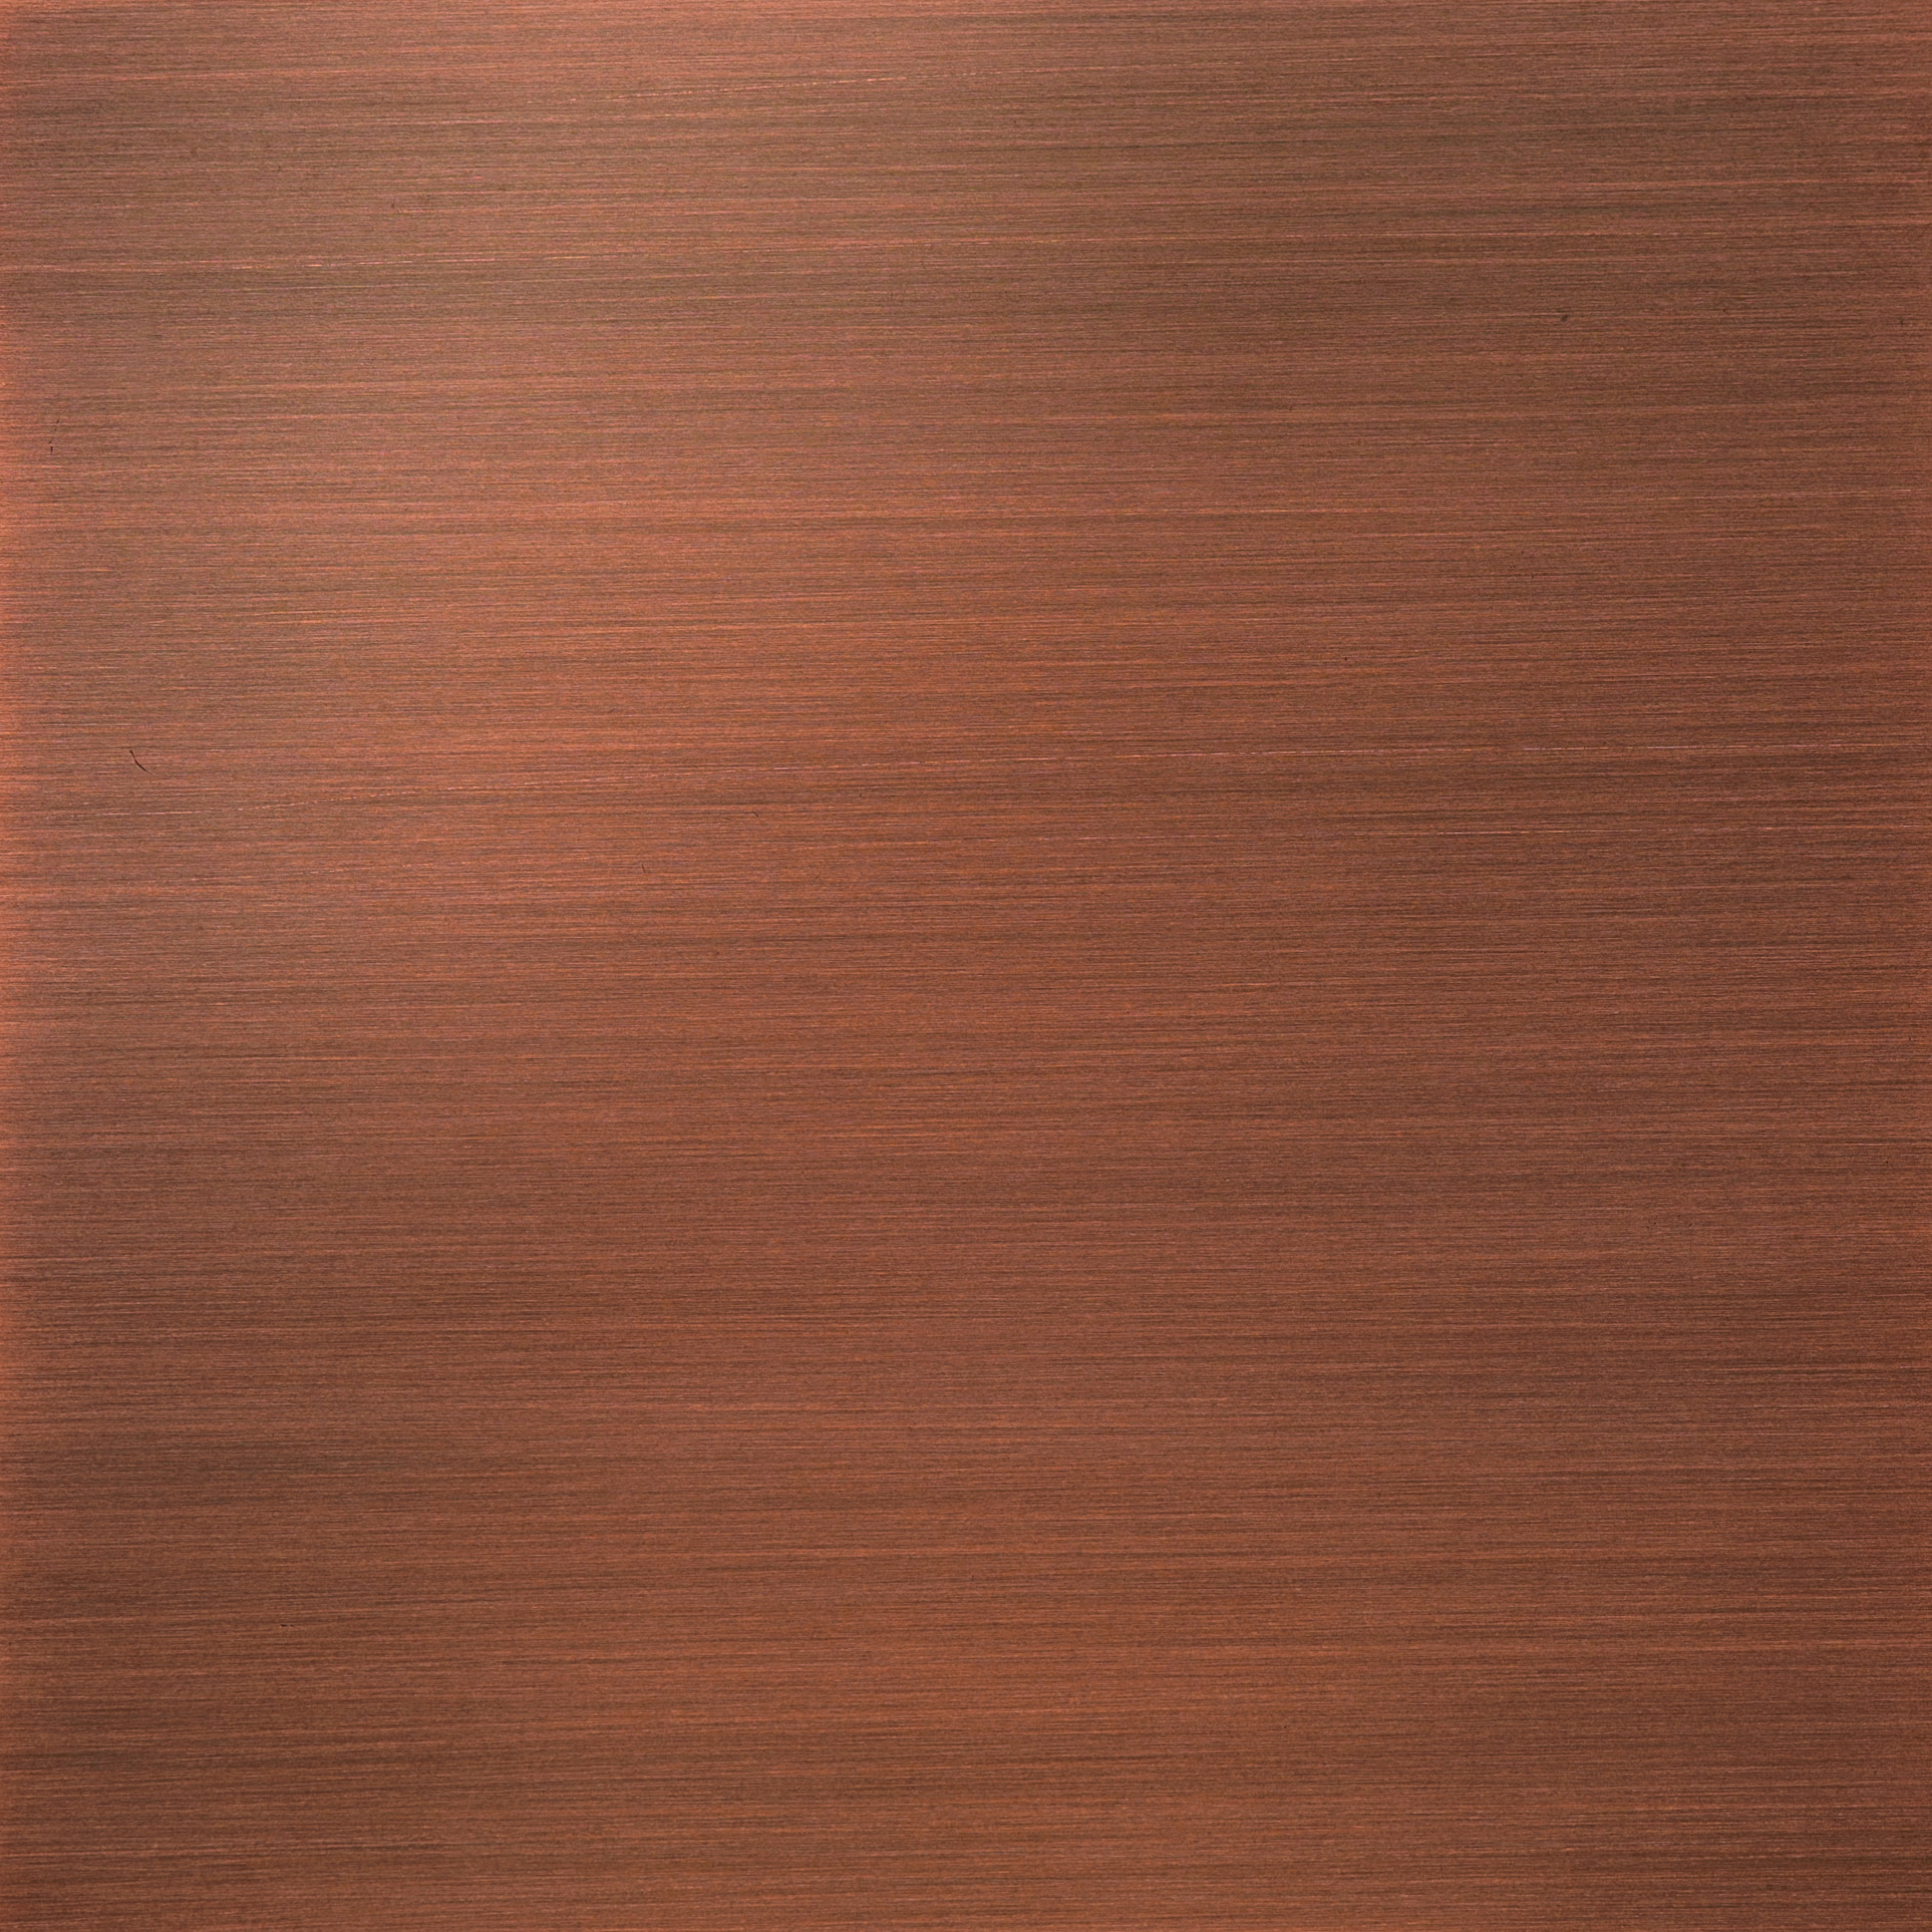 Linear Dark Copper